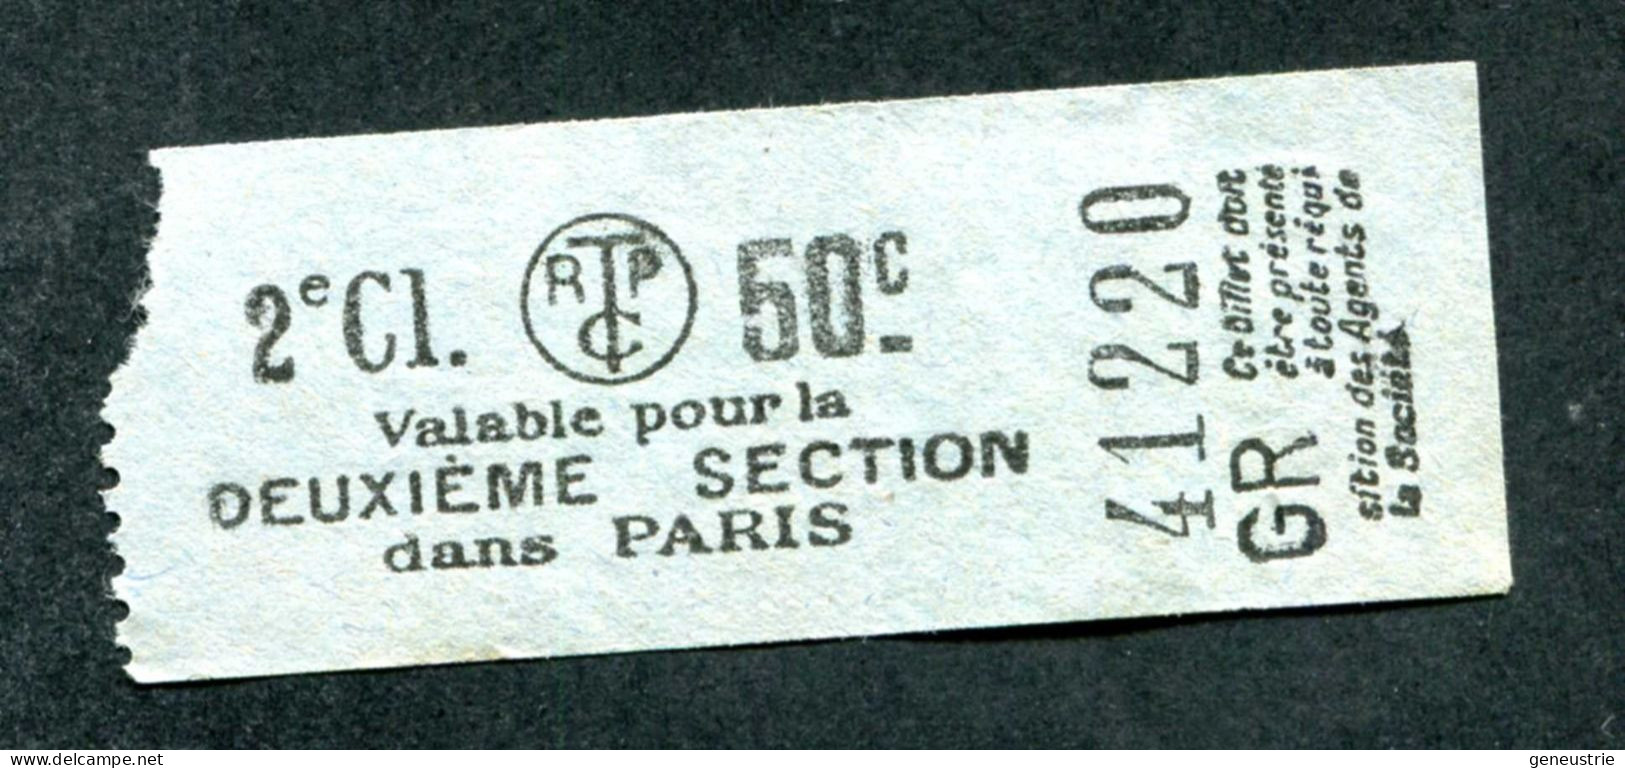 Ticket De Tramways Parisiens 1921 à 1938 (STCRP) 2e Classe 50c - Paris" Tramway - Tram - Europa